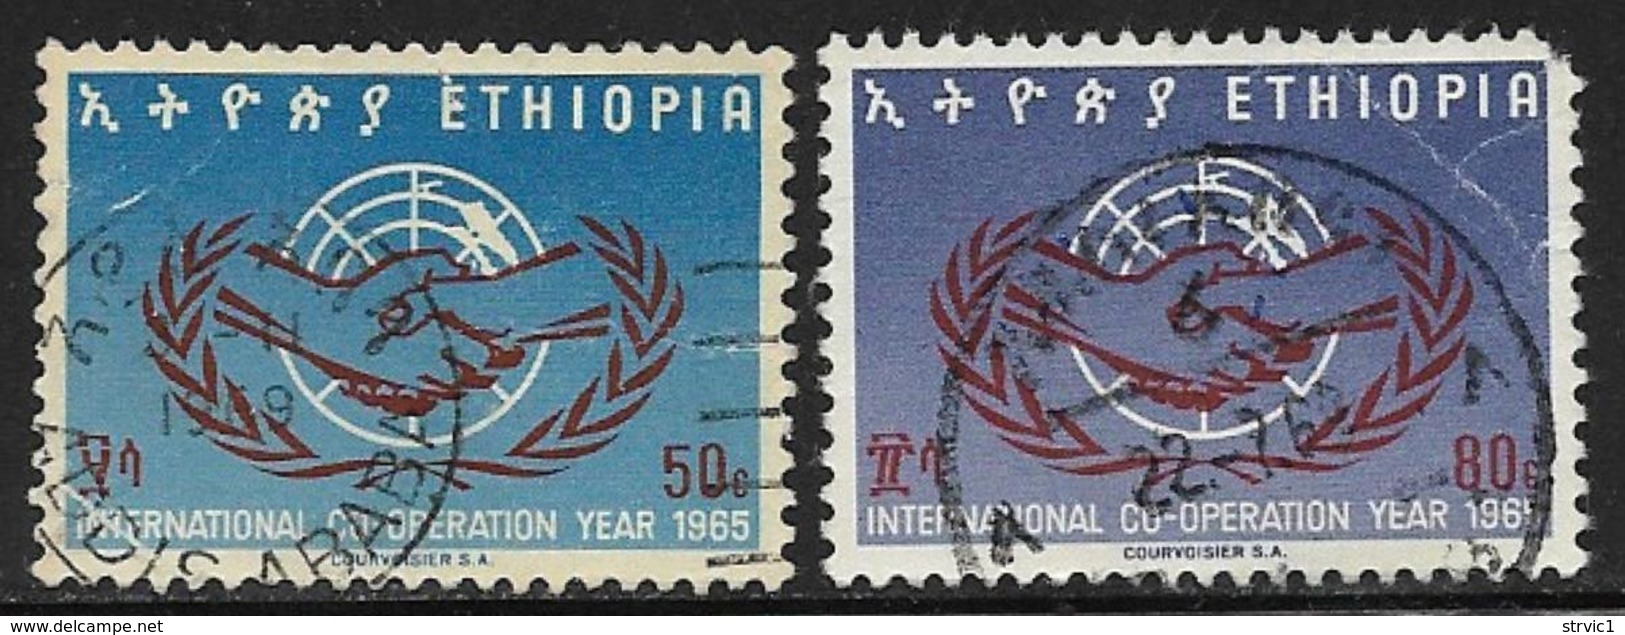 Ethiopia Scott # 450-1 Used ICY Emblem, 1965, Crease,round Corner - Ethiopie